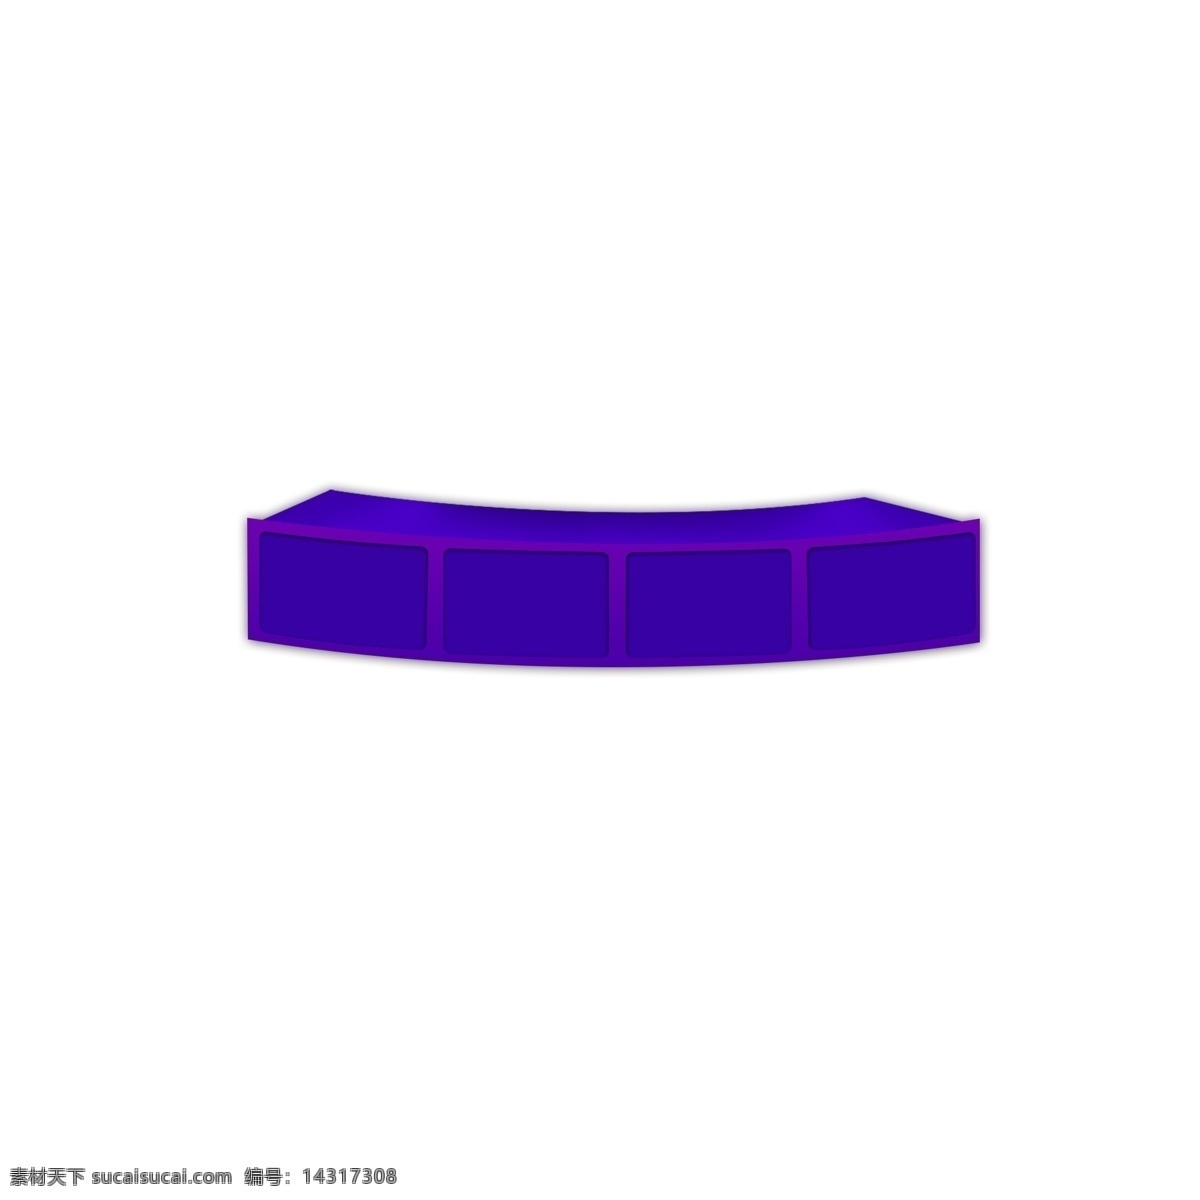 弧形平台 弧形 平台 图案 紫色